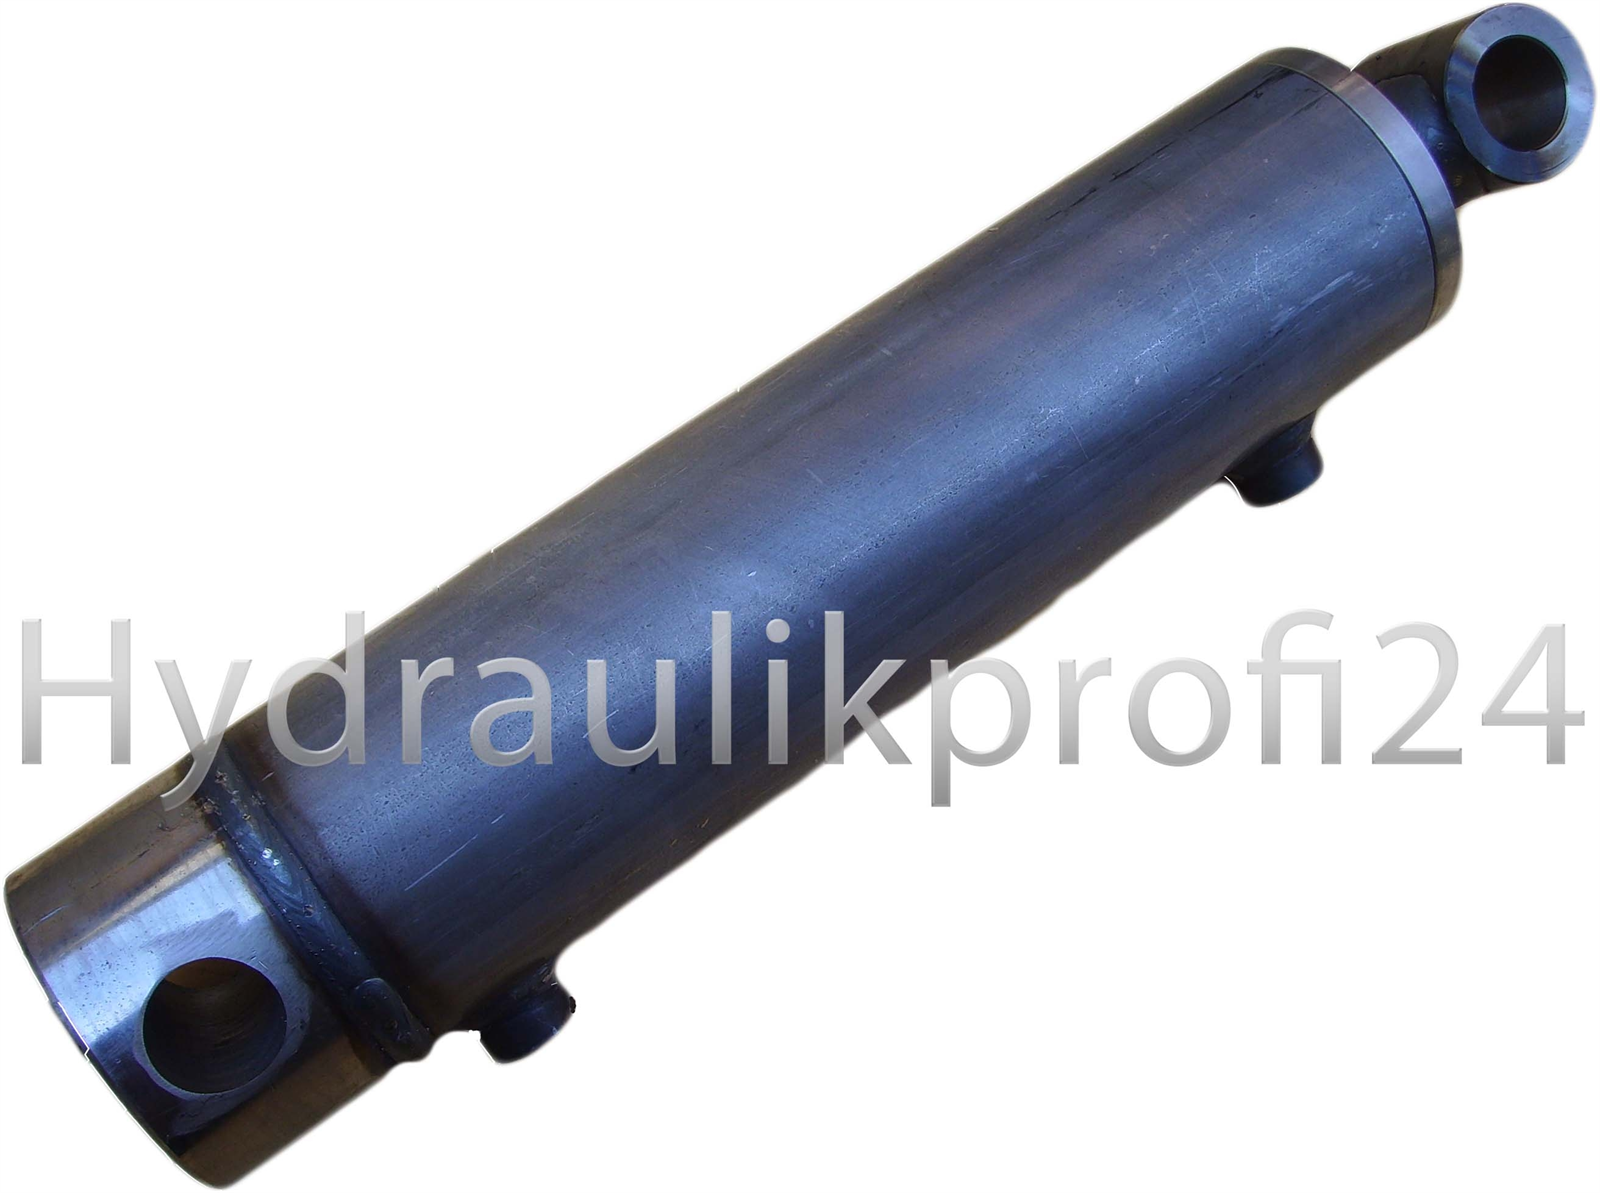 Hydraulikprofi24 - Hydraulikzylinder doppeltwirkend 30 50 1800 mit  Befestigung Querbohrung